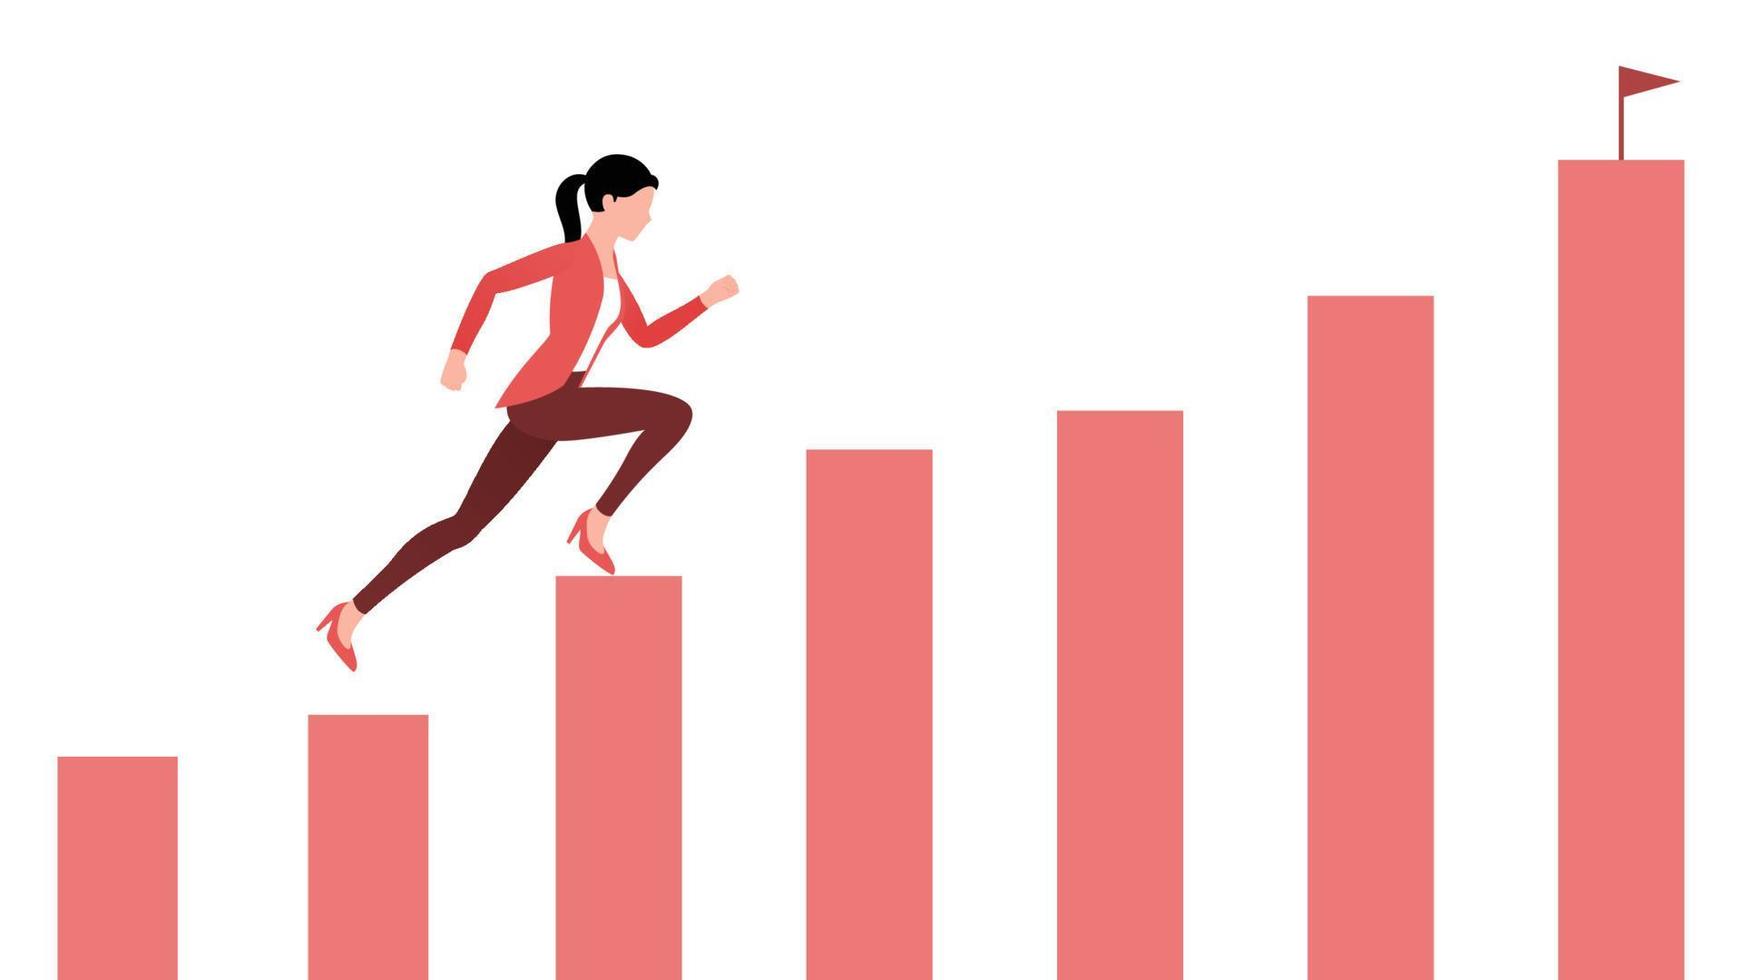 donna che corre su una barra del grafico verso il successo, illustrazione vettoriale del carattere aziendale su sfondo bianco.